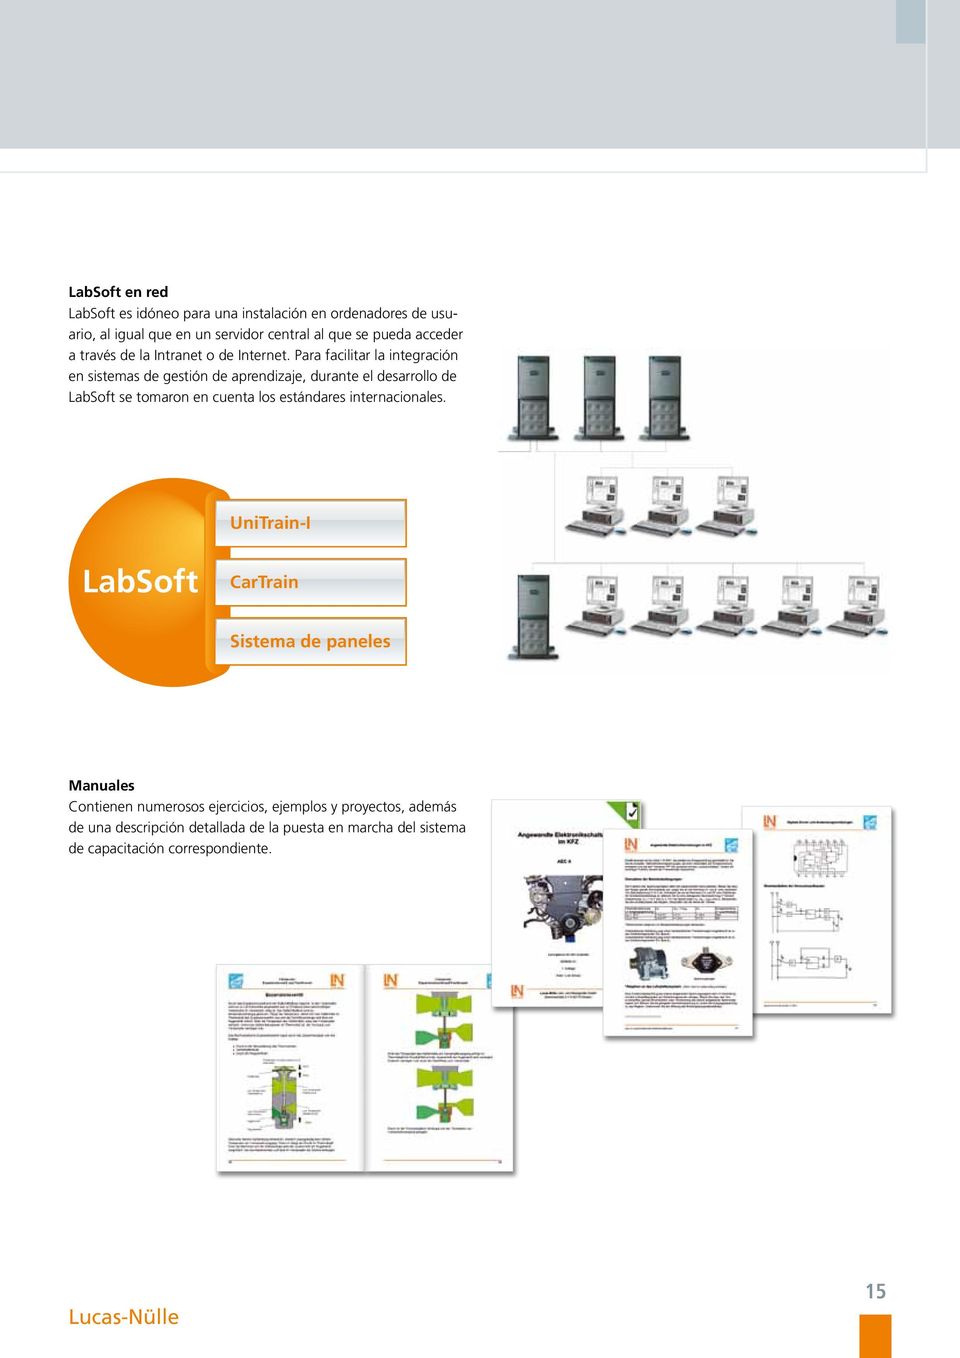 Para facilitar la integración en sistemas de gestión de aprendizaje, durante el desarrollo de LabSoft se tomaron en cuenta los estándares